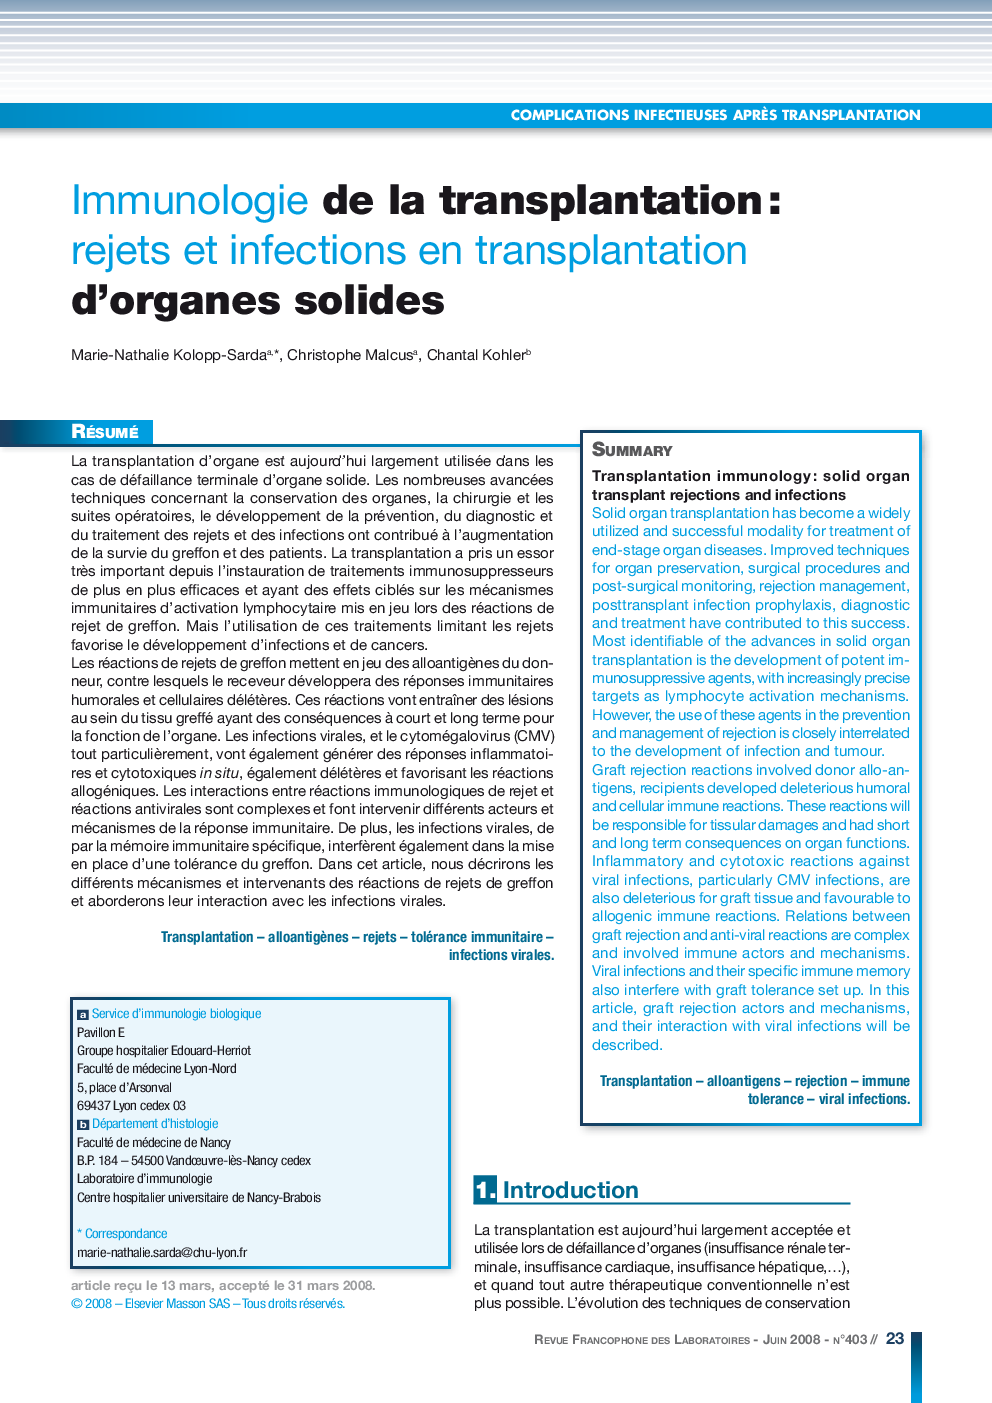 Immunologie de la transplantation : rejets et infections en transplantation d'organes solides